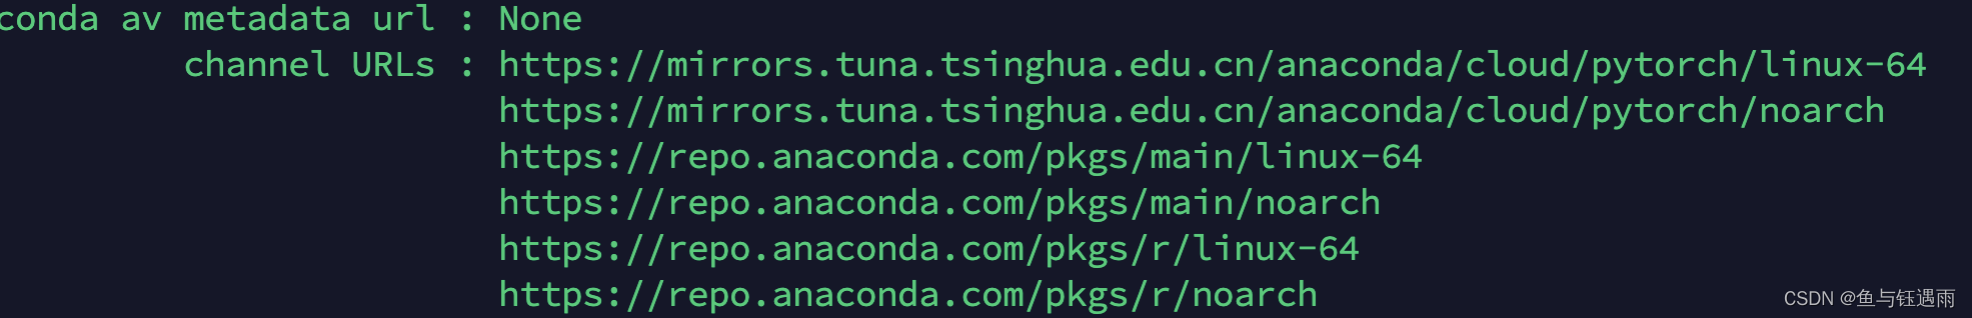 Conda 替换镜像源方法尽头，再也不用到处搜镜像源地址